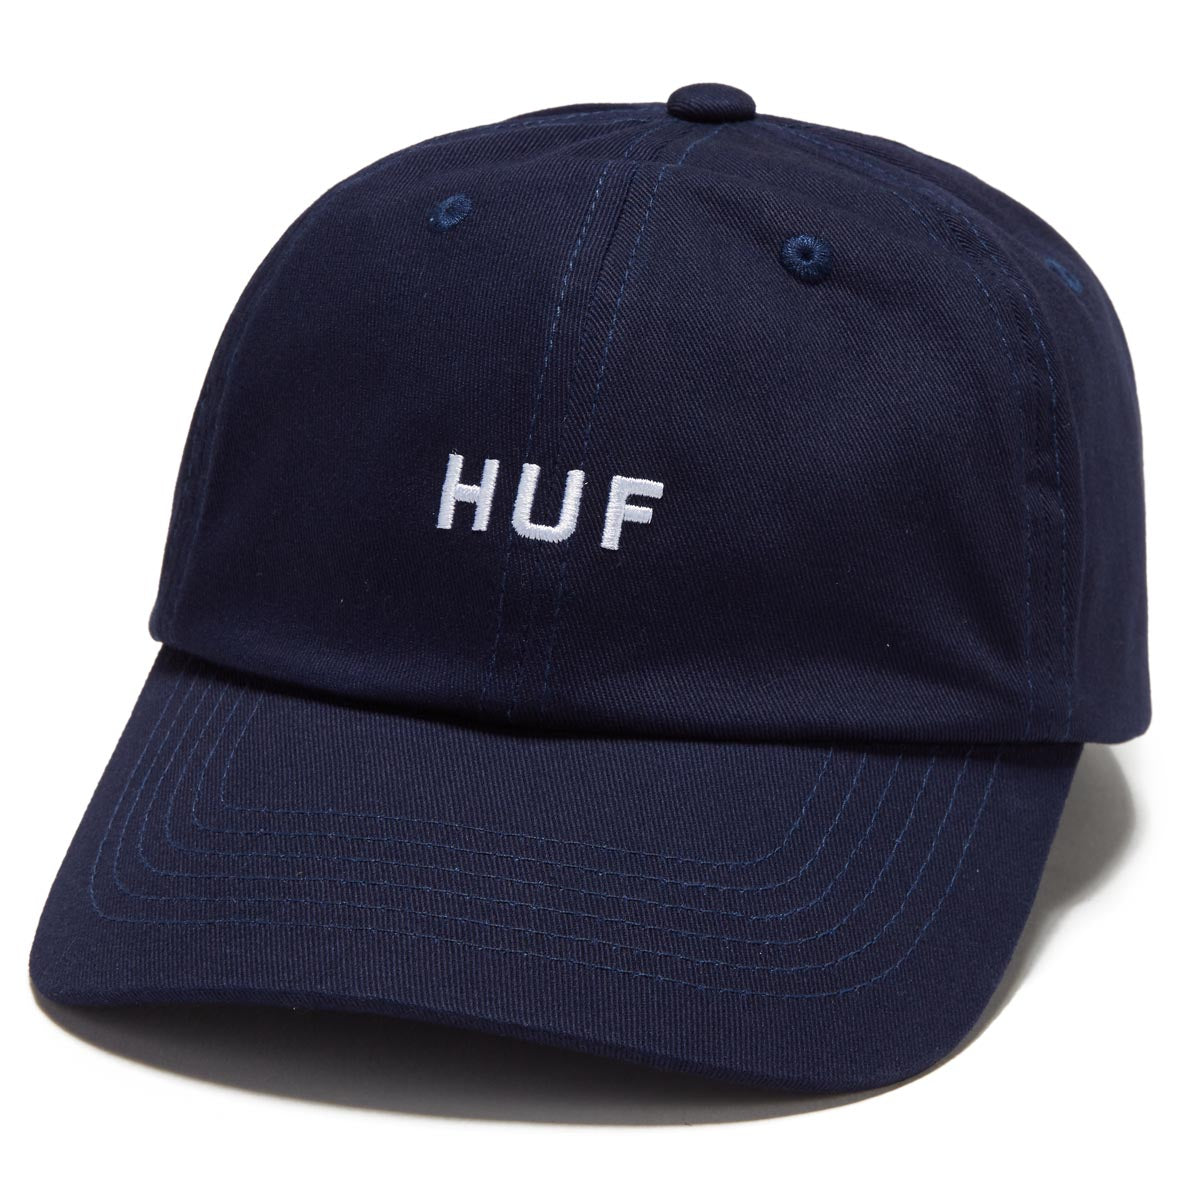 HUF Set Og Cv 6 Panel Hat - Navy image 1